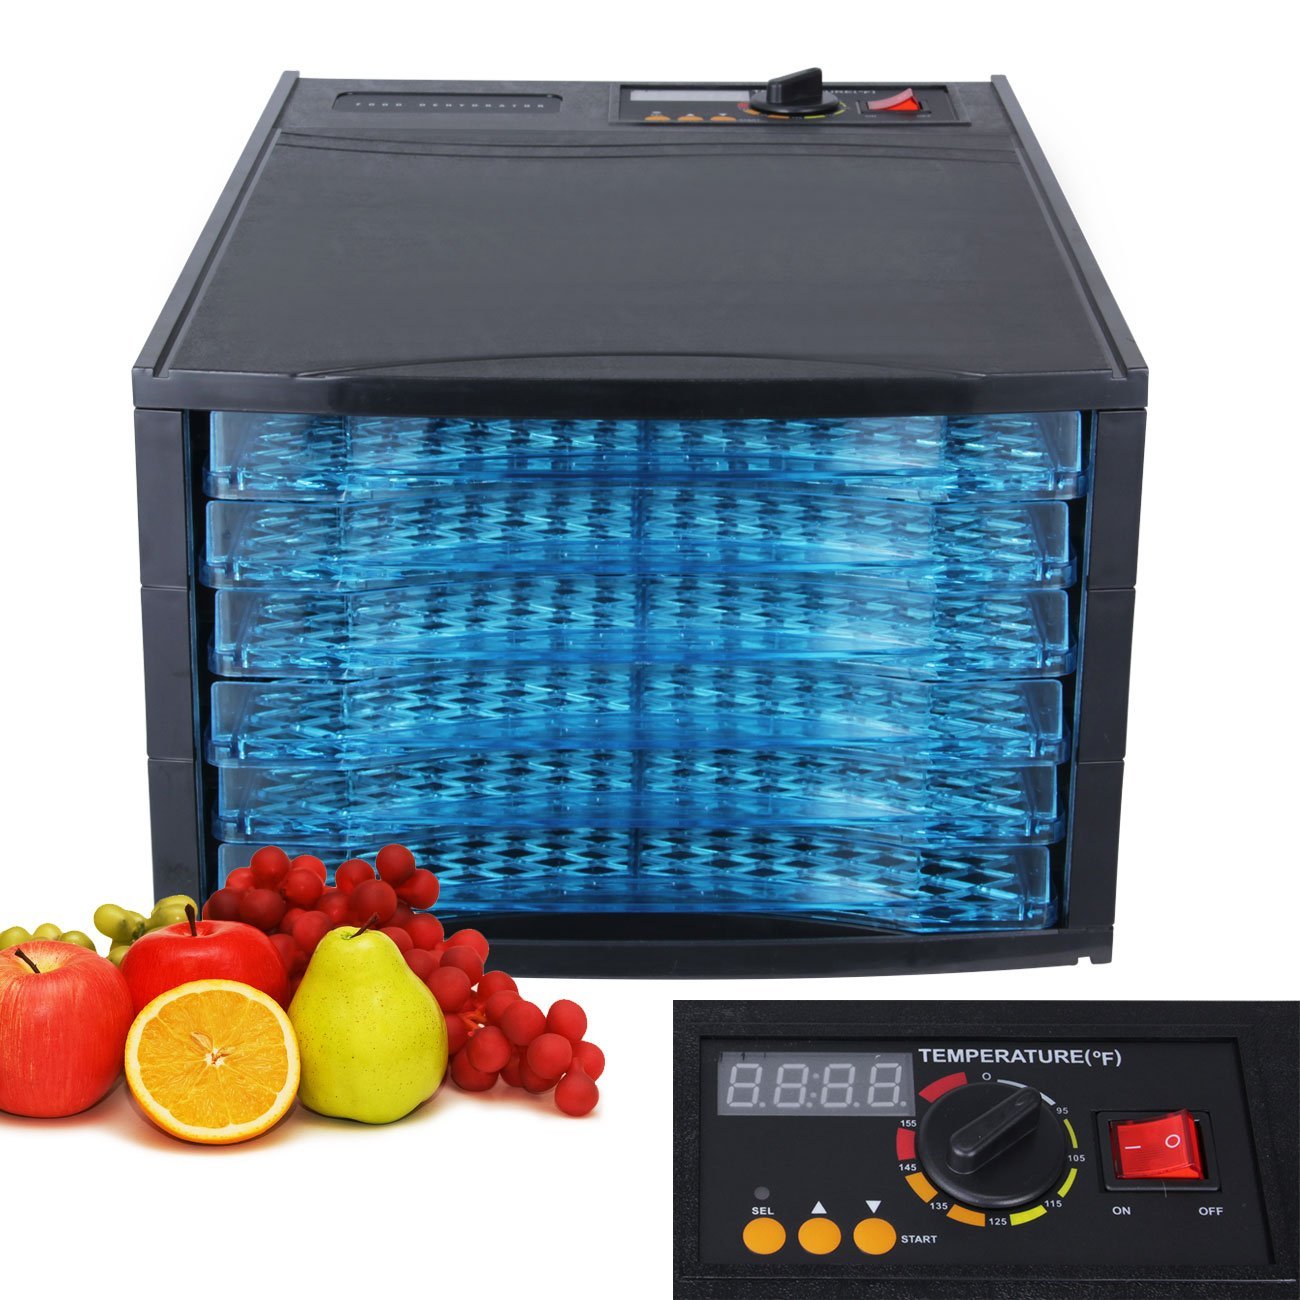 DELLA Electric Food Fruit Dehydrator Dryer 6-Trays, 650w